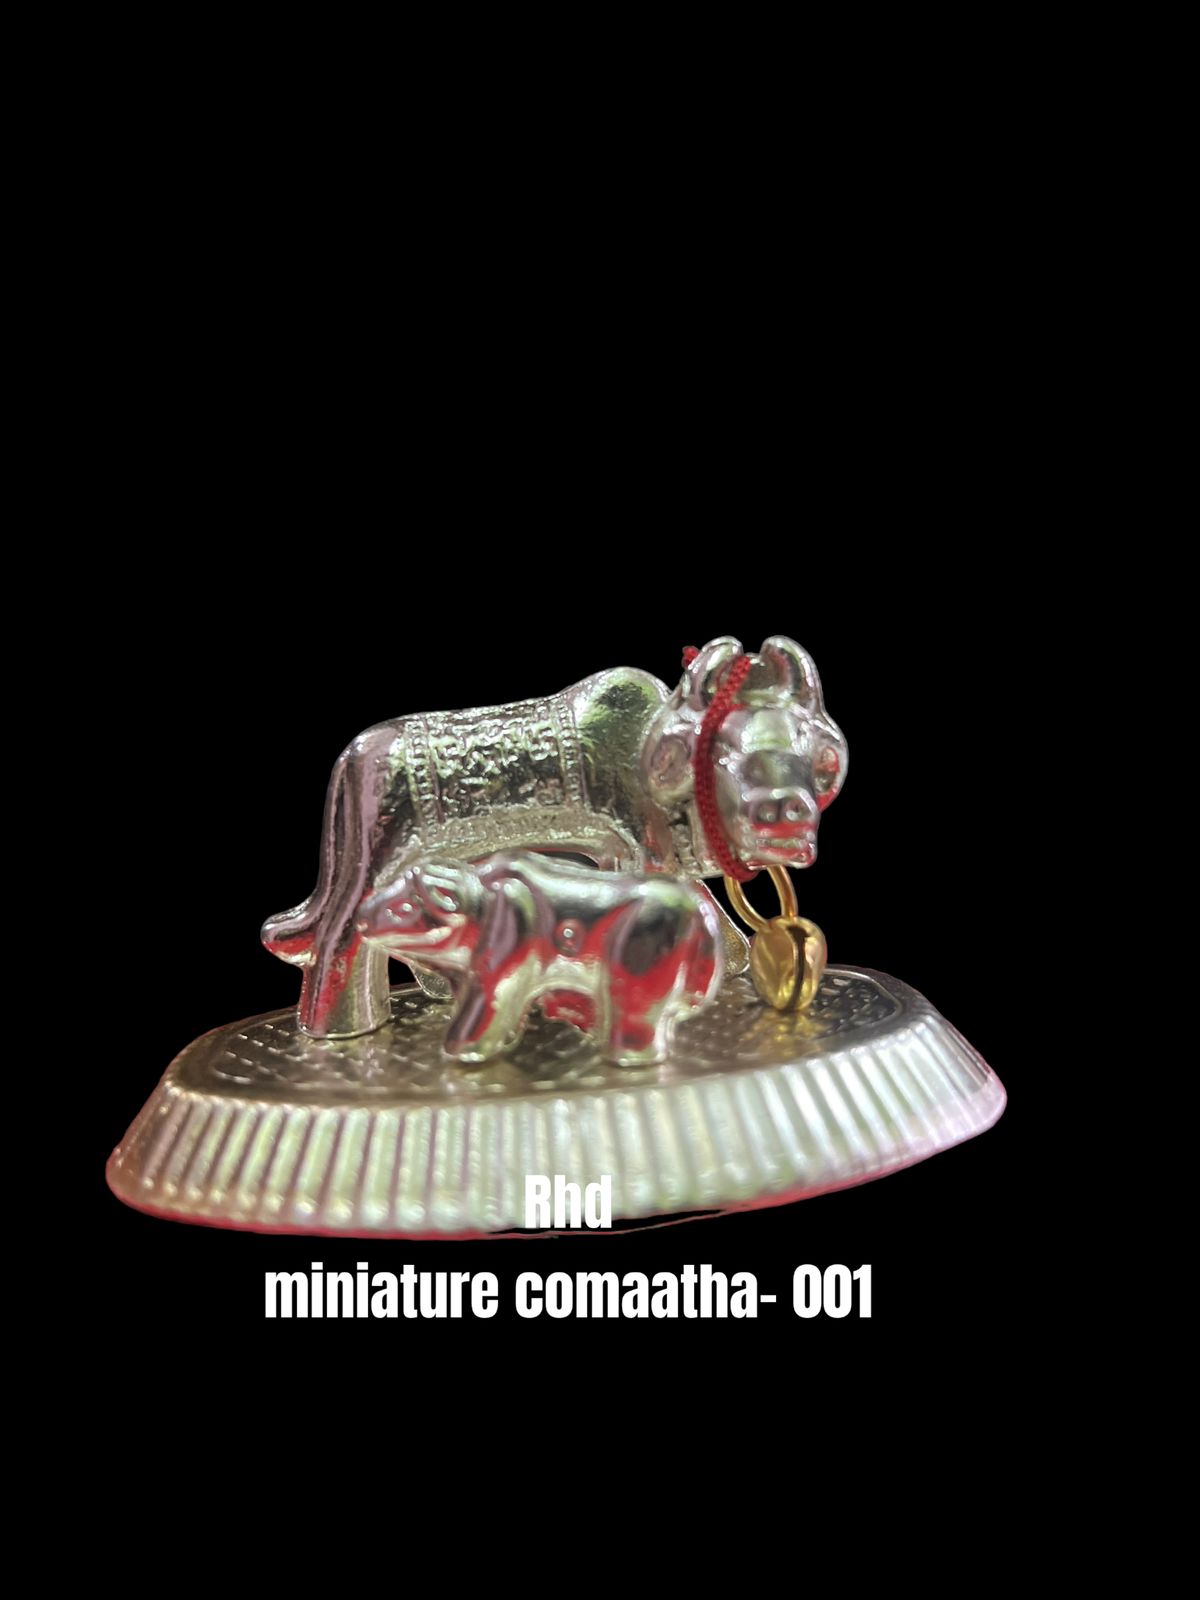 Rhd-miniature comatha